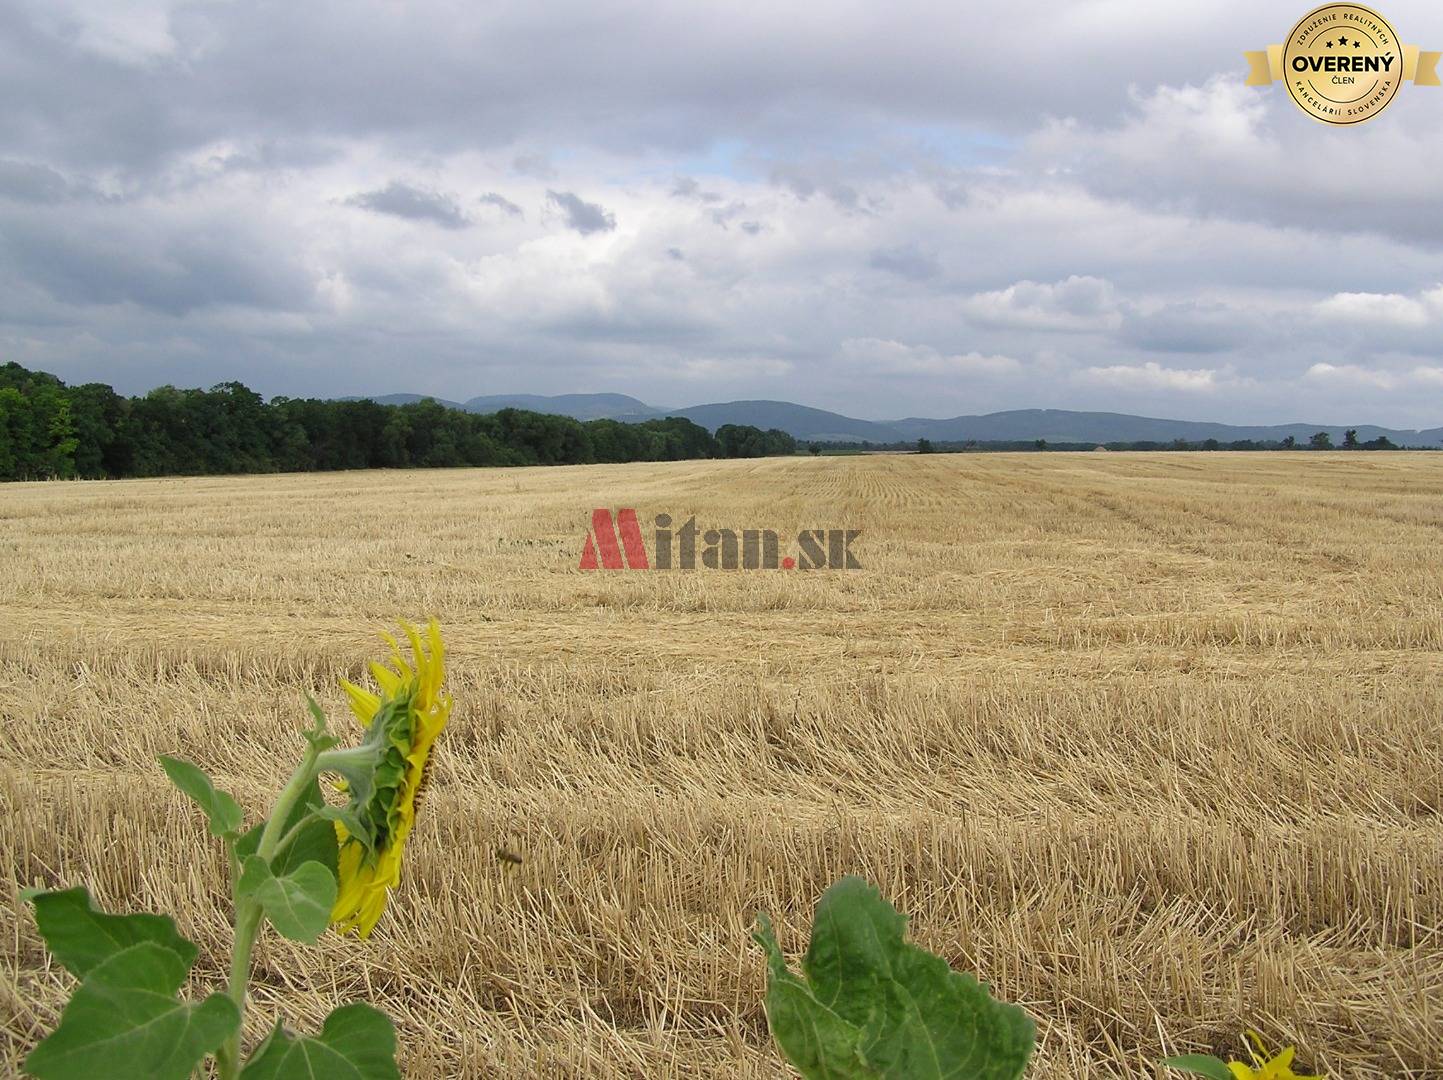 Kúpime ornú pôdu na poľnohospodárske účely, Trnavský kraj